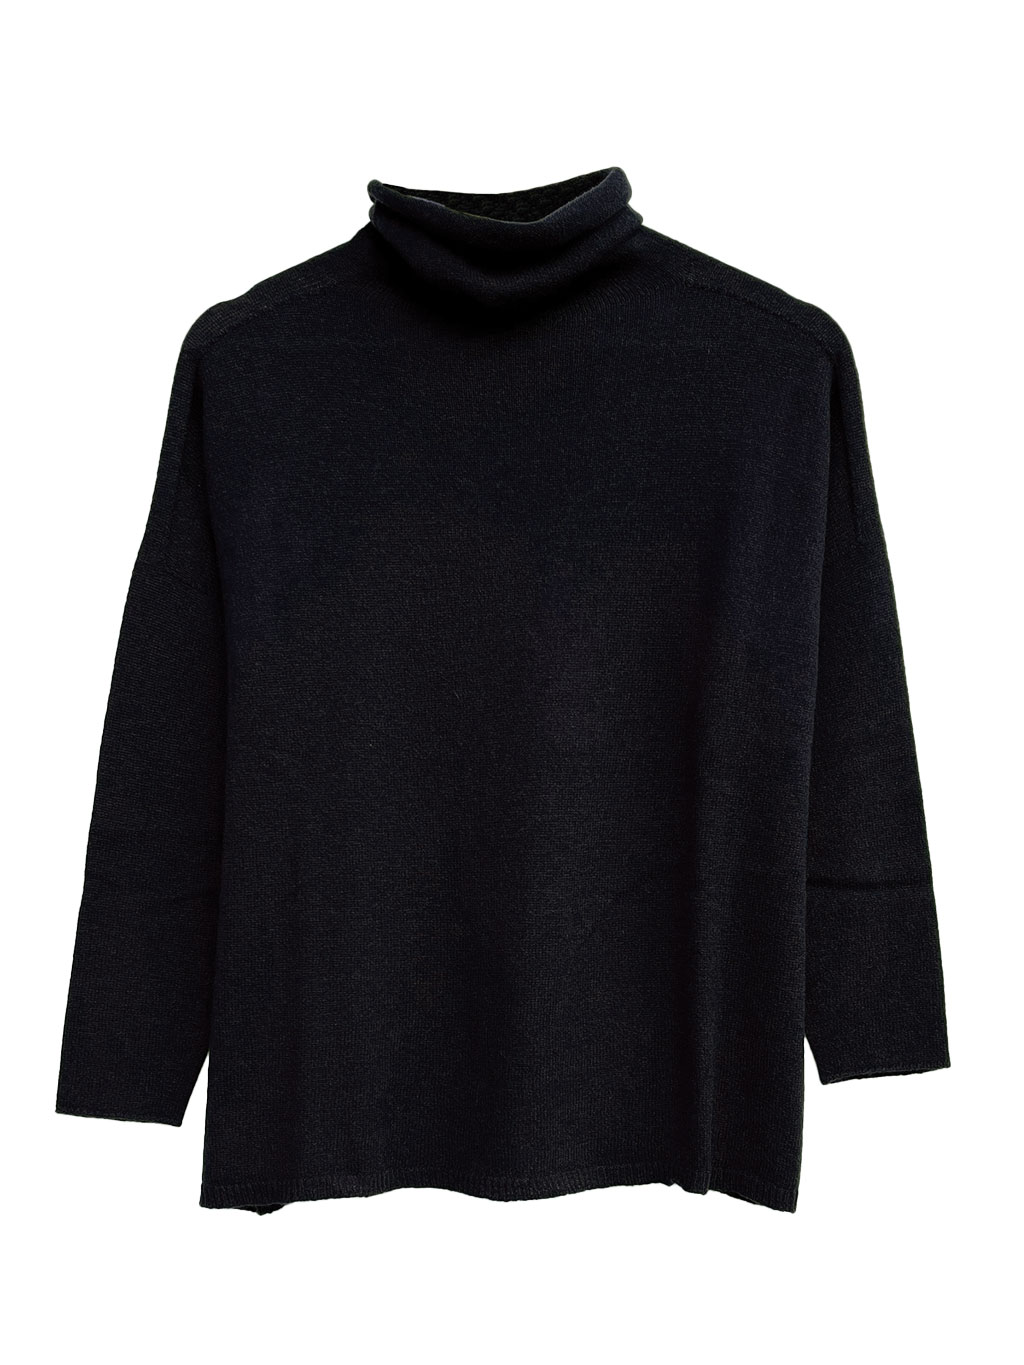 black-cashmere-turtleneck-pullover